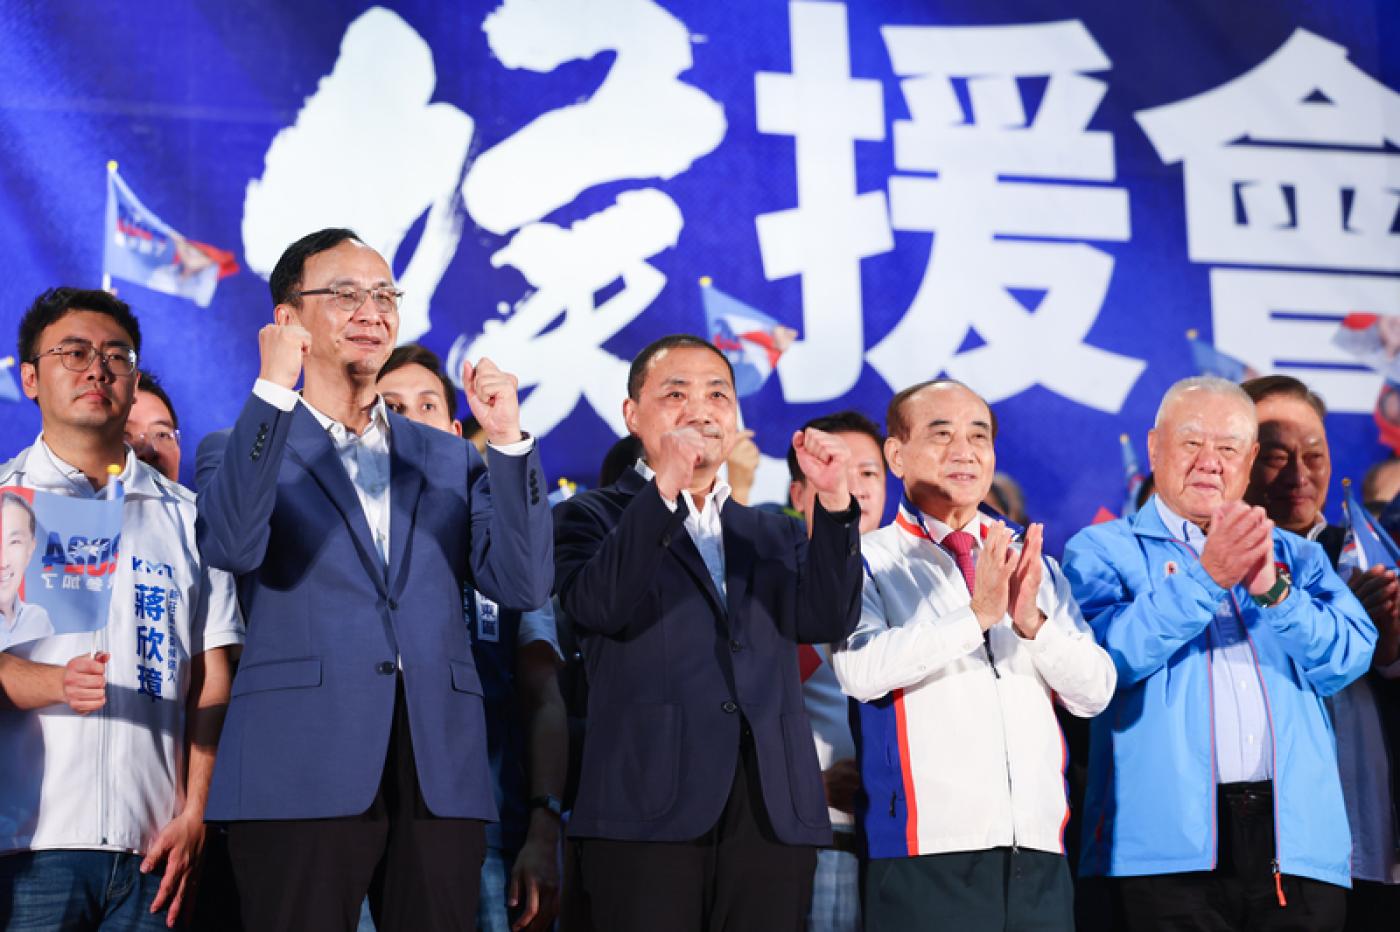 國民黨主席朱立倫(左2)及總統參選人侯友宜(左3)出席造勢活動。中央社